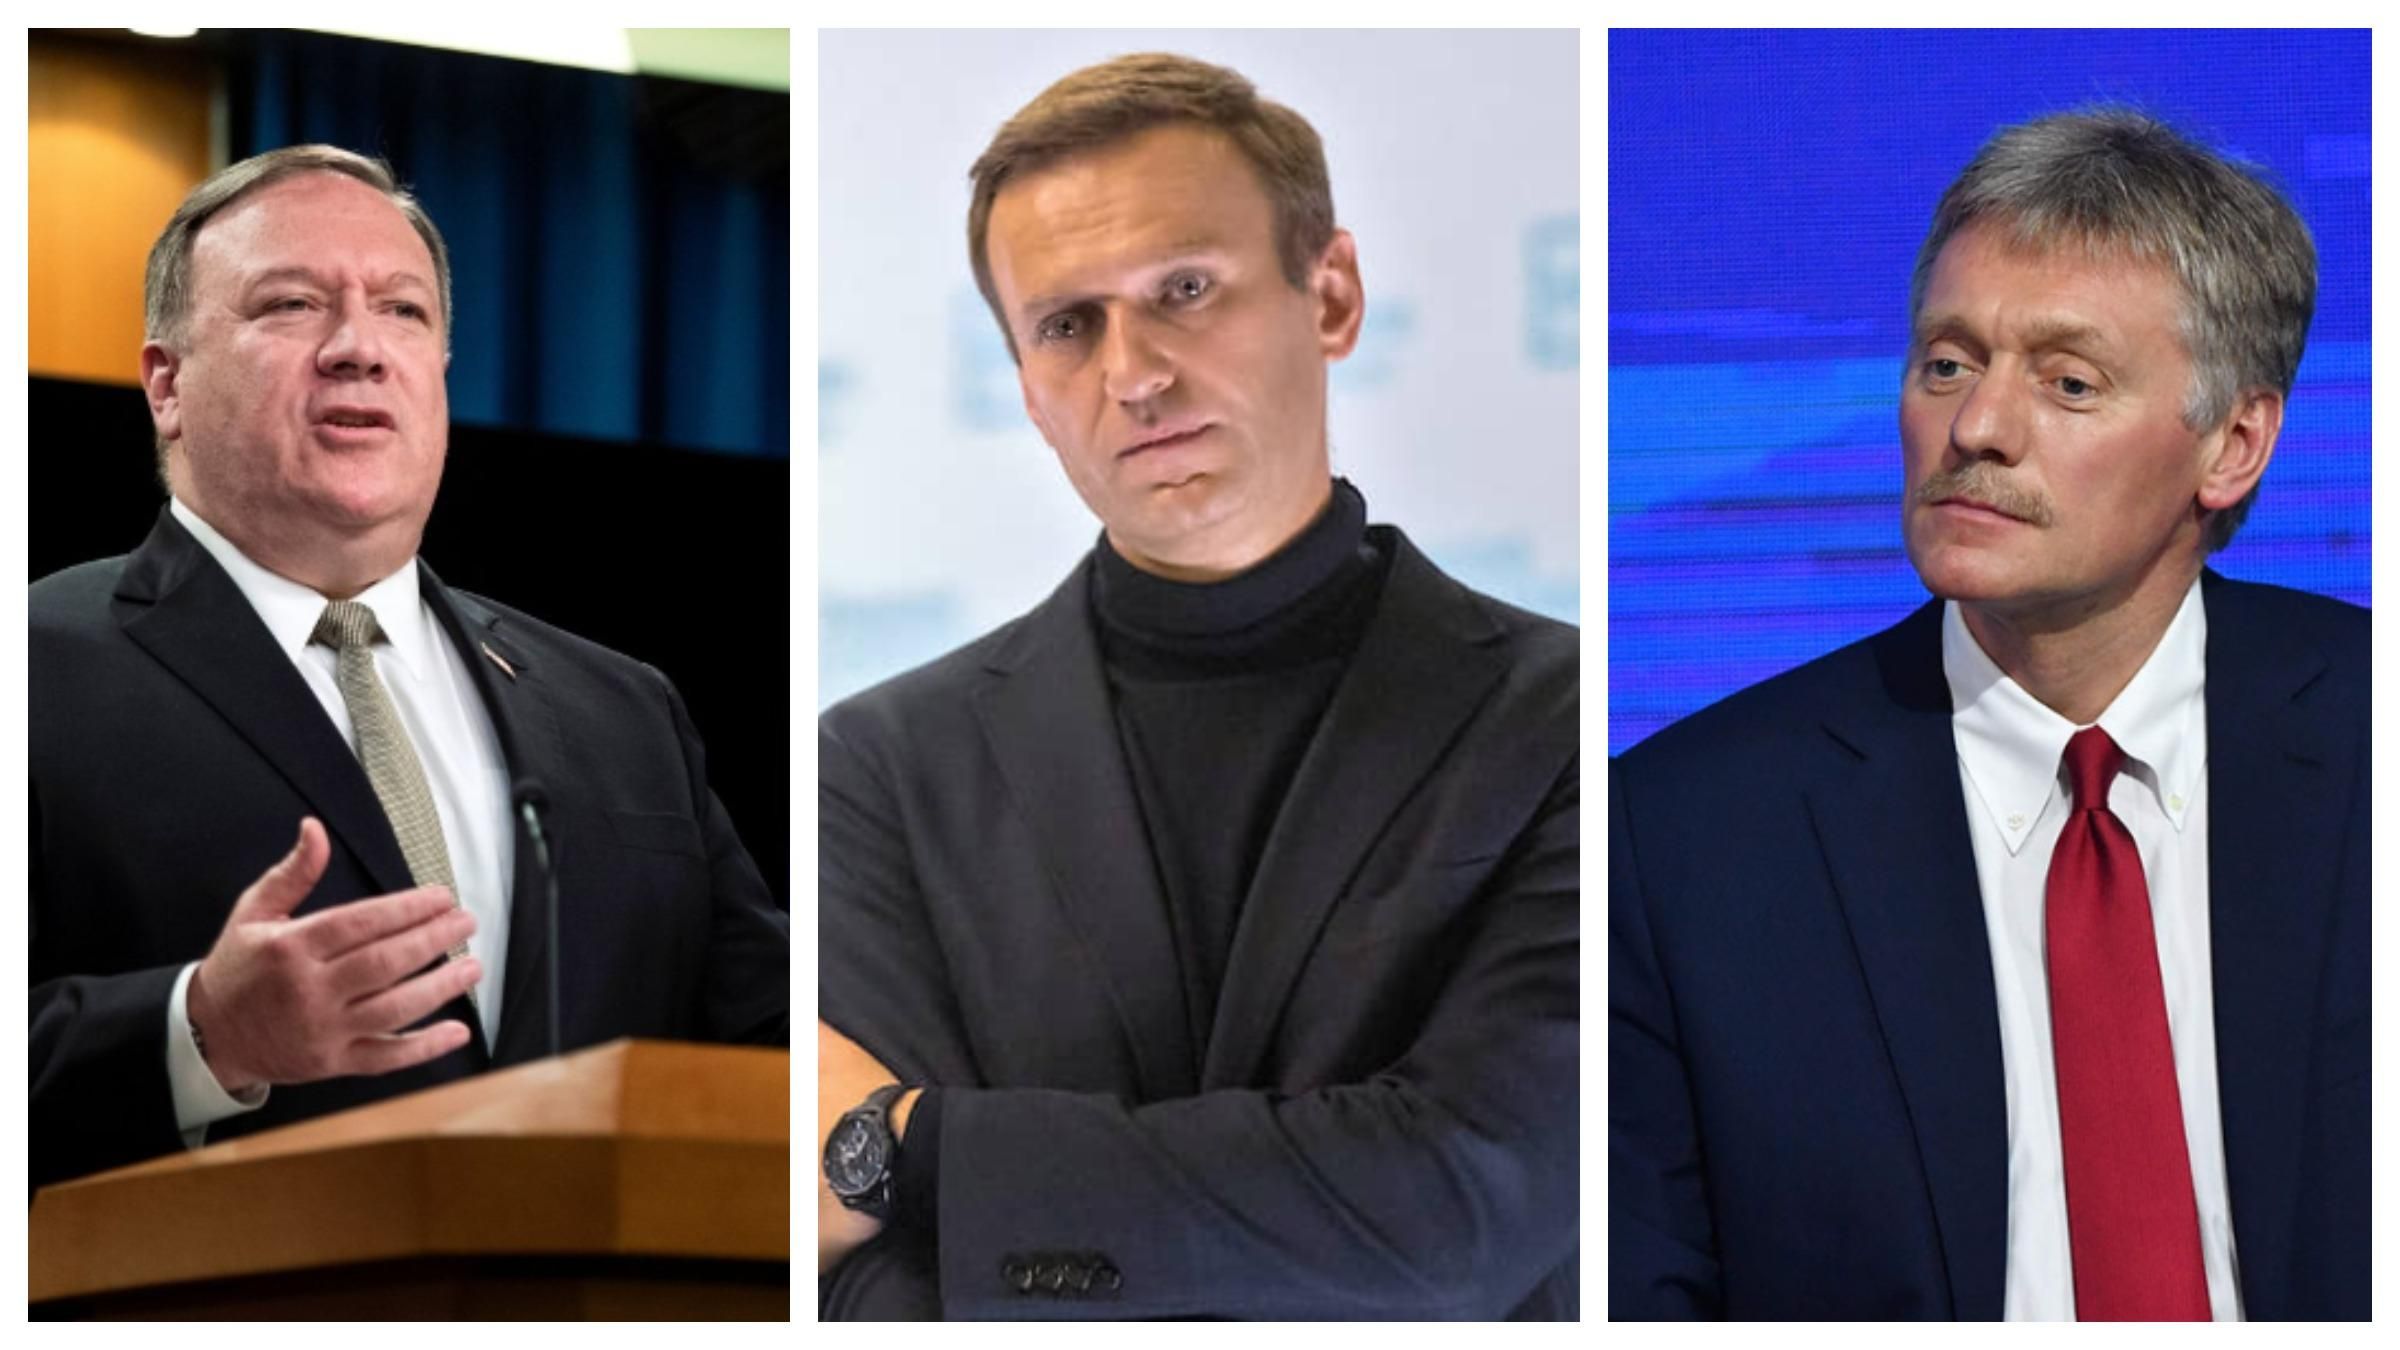 Арешт Навального: Впевнені в собі лідери не бояться опозиції, – Помпео